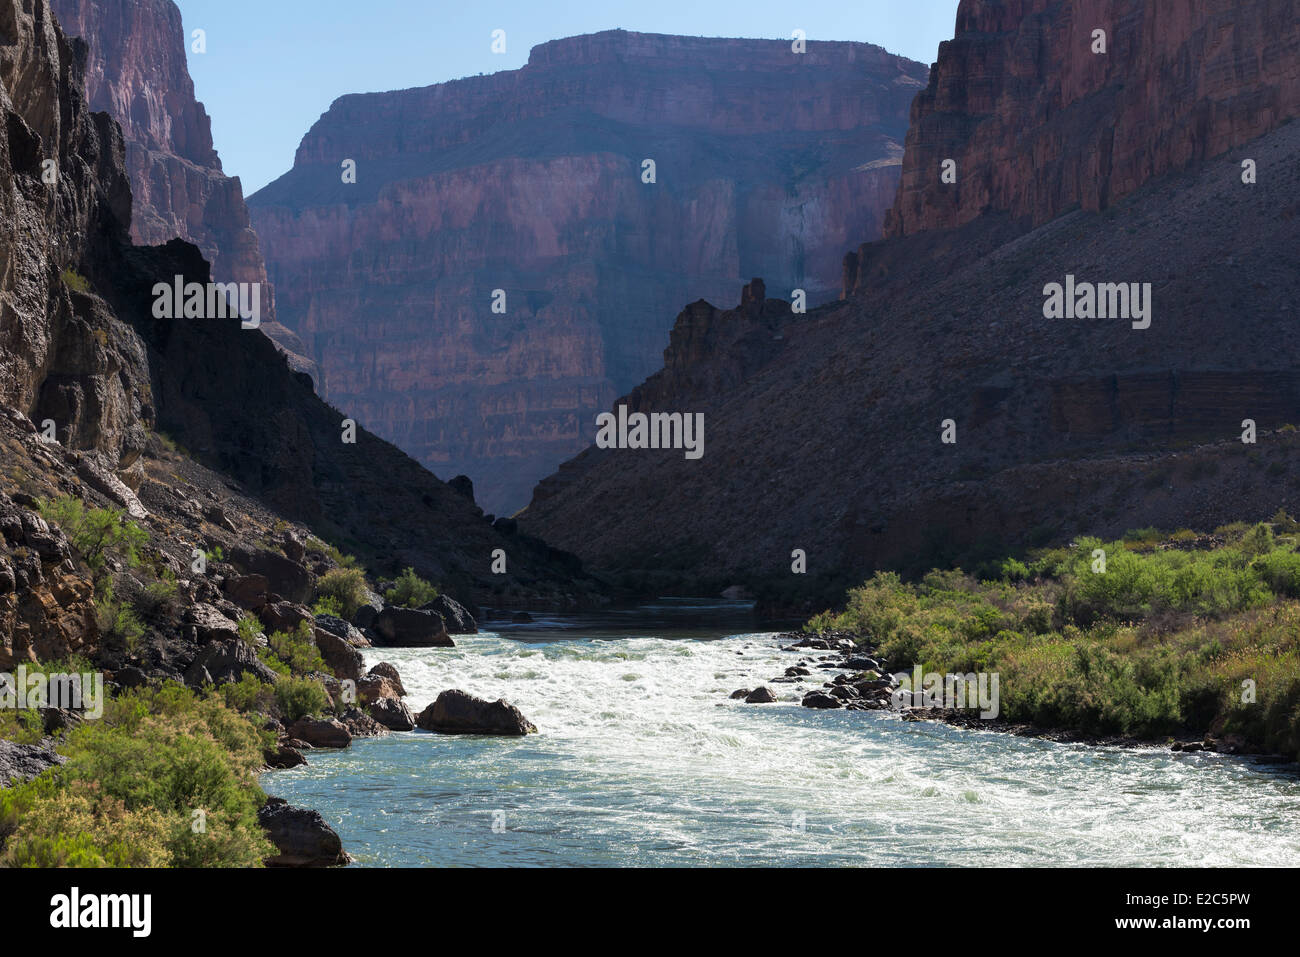 Chutes de lave, l'un des plus grands rapides sur le fleuve Colorado dans le Grand Canyon, Arizona. Banque D'Images